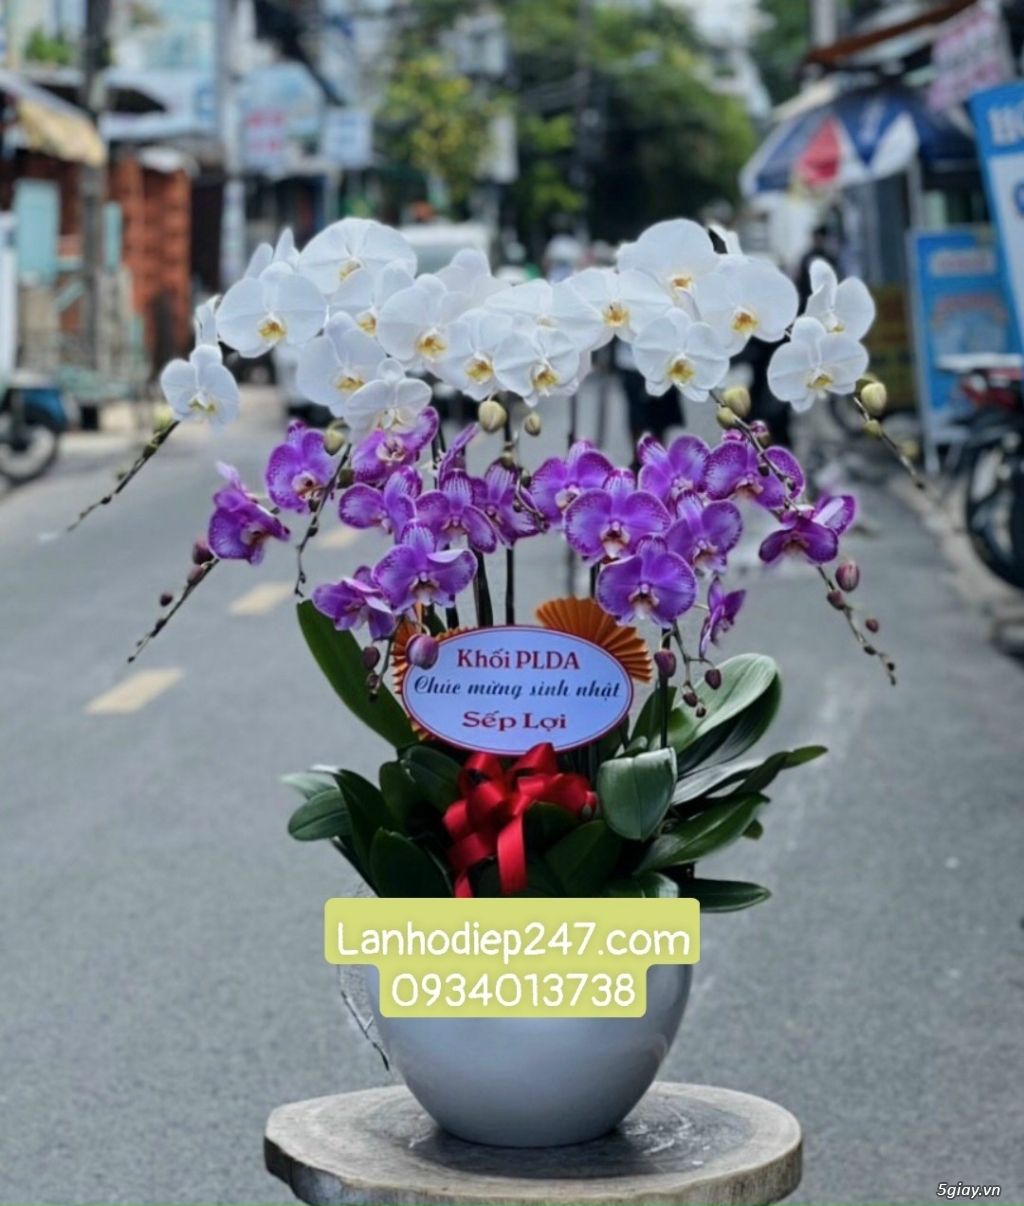 Shop hoa tươi Lan Hồ Điệp 247 tại Phú Nhuận 0934013738 - 12